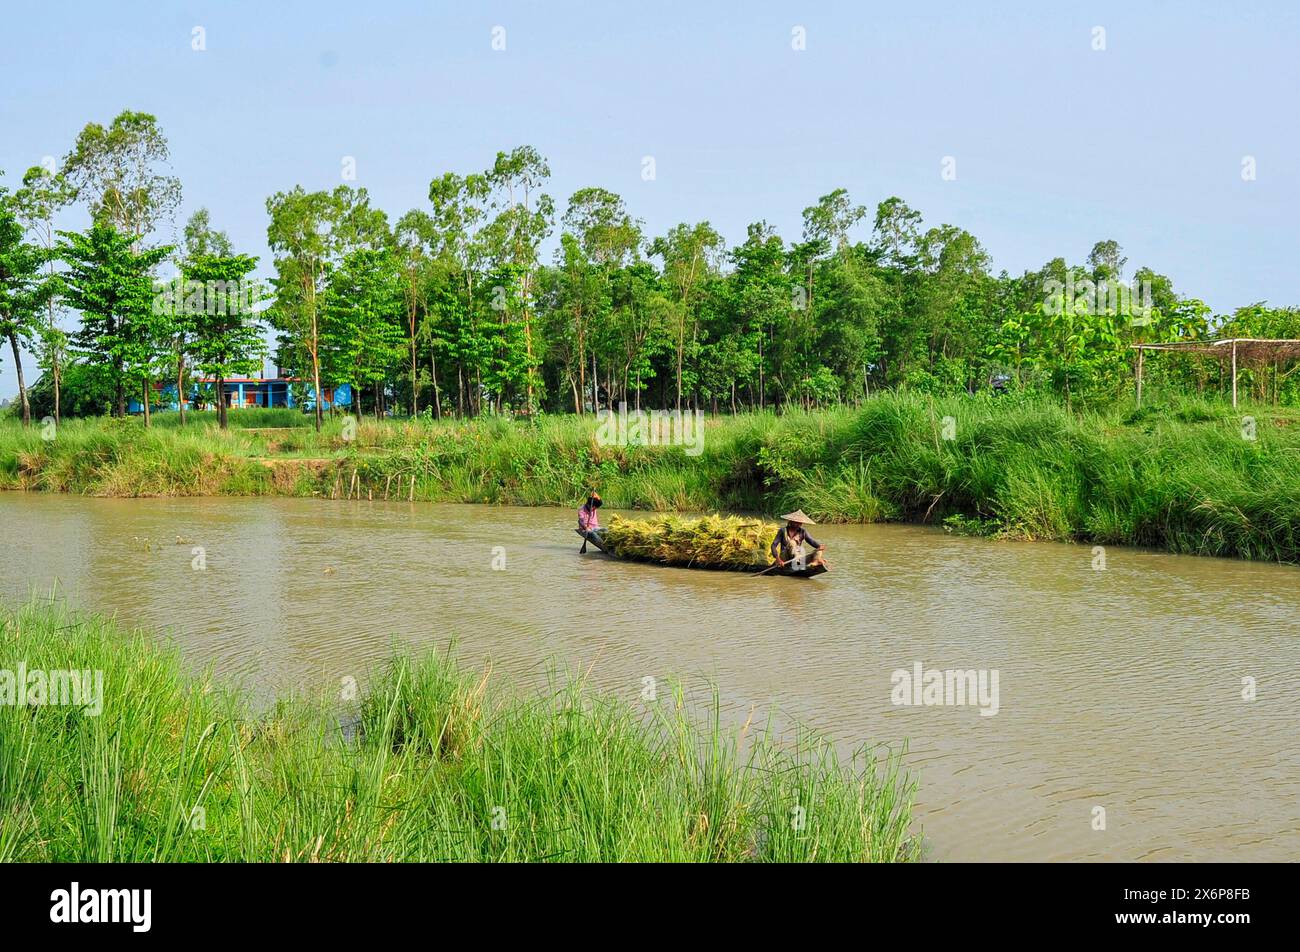 Les agriculteurs récoltant le paddy Boro partiellement submergés dans des terres inondées. Les pluies fréquentes à Sylhet et l'eau qui coule des collines de Meghalaya ont inondé les rizières de Kanaighat, Goainghat et Jaintapur upazilas bordant Sylhet. Sylhet, Bangladesh. Banque D'Images